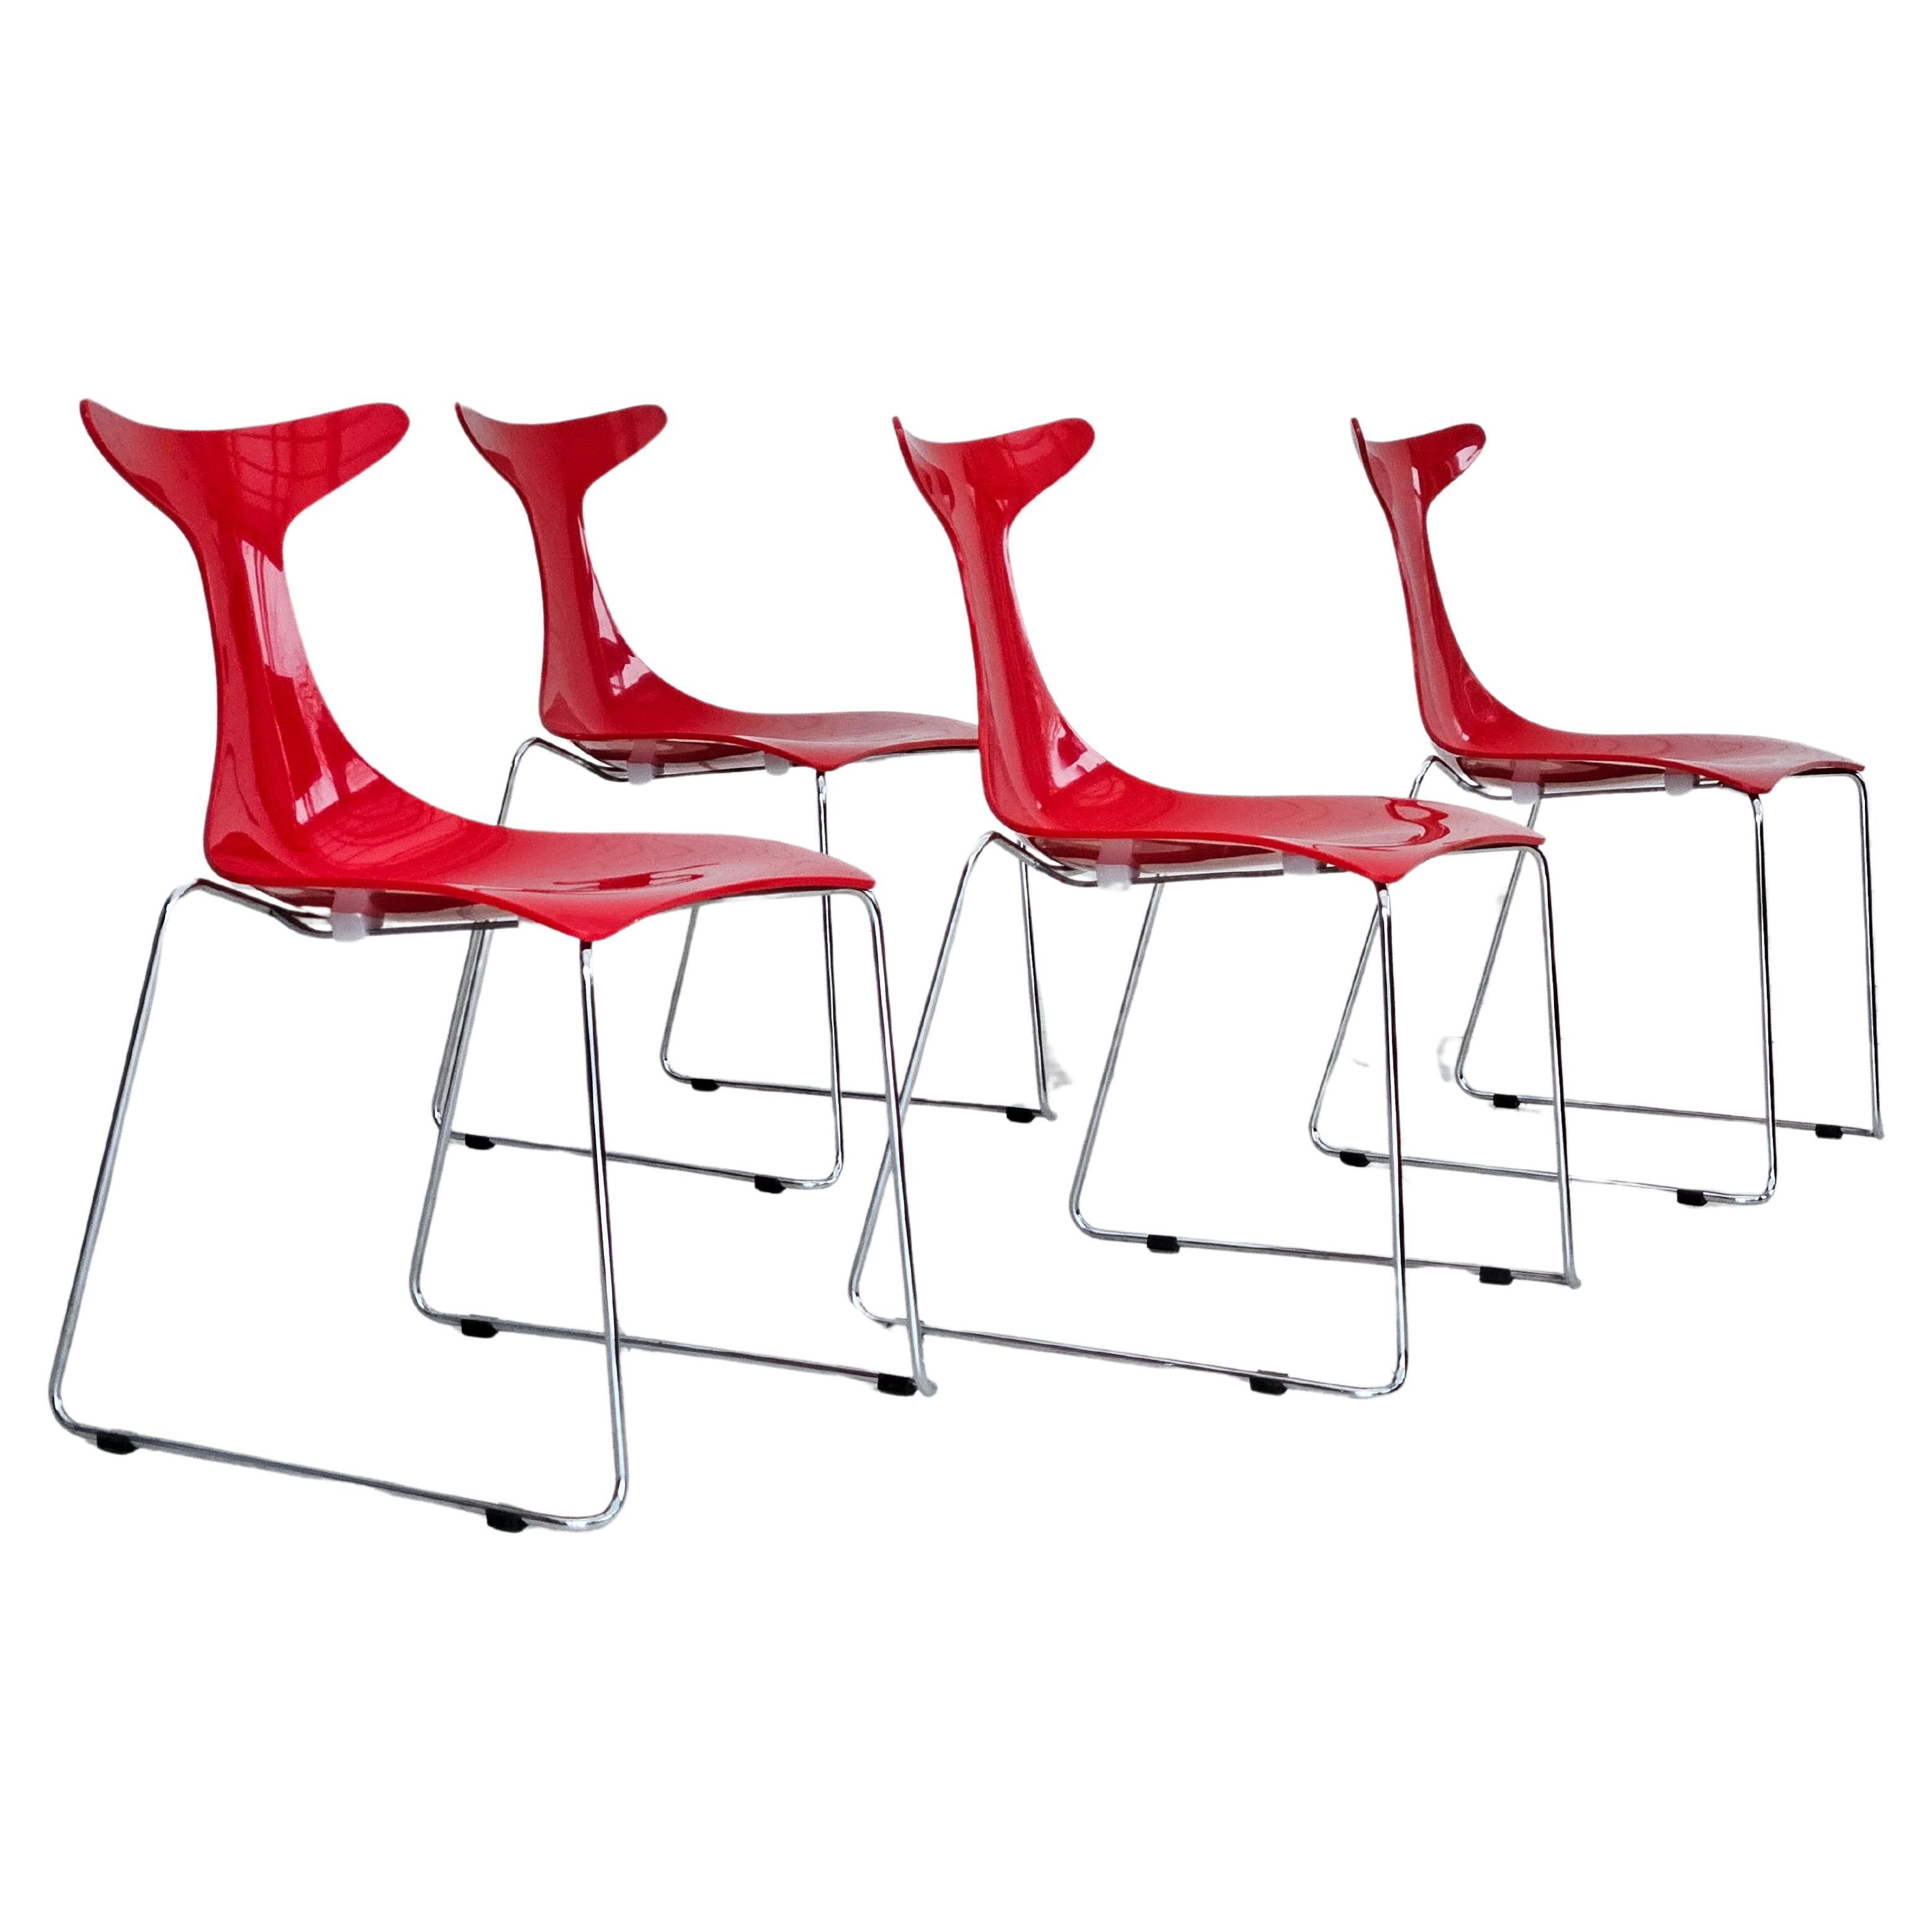 1990s, Italian design by Gino Carollo, set of 4 chairs, model "Delfy", original. For Sale